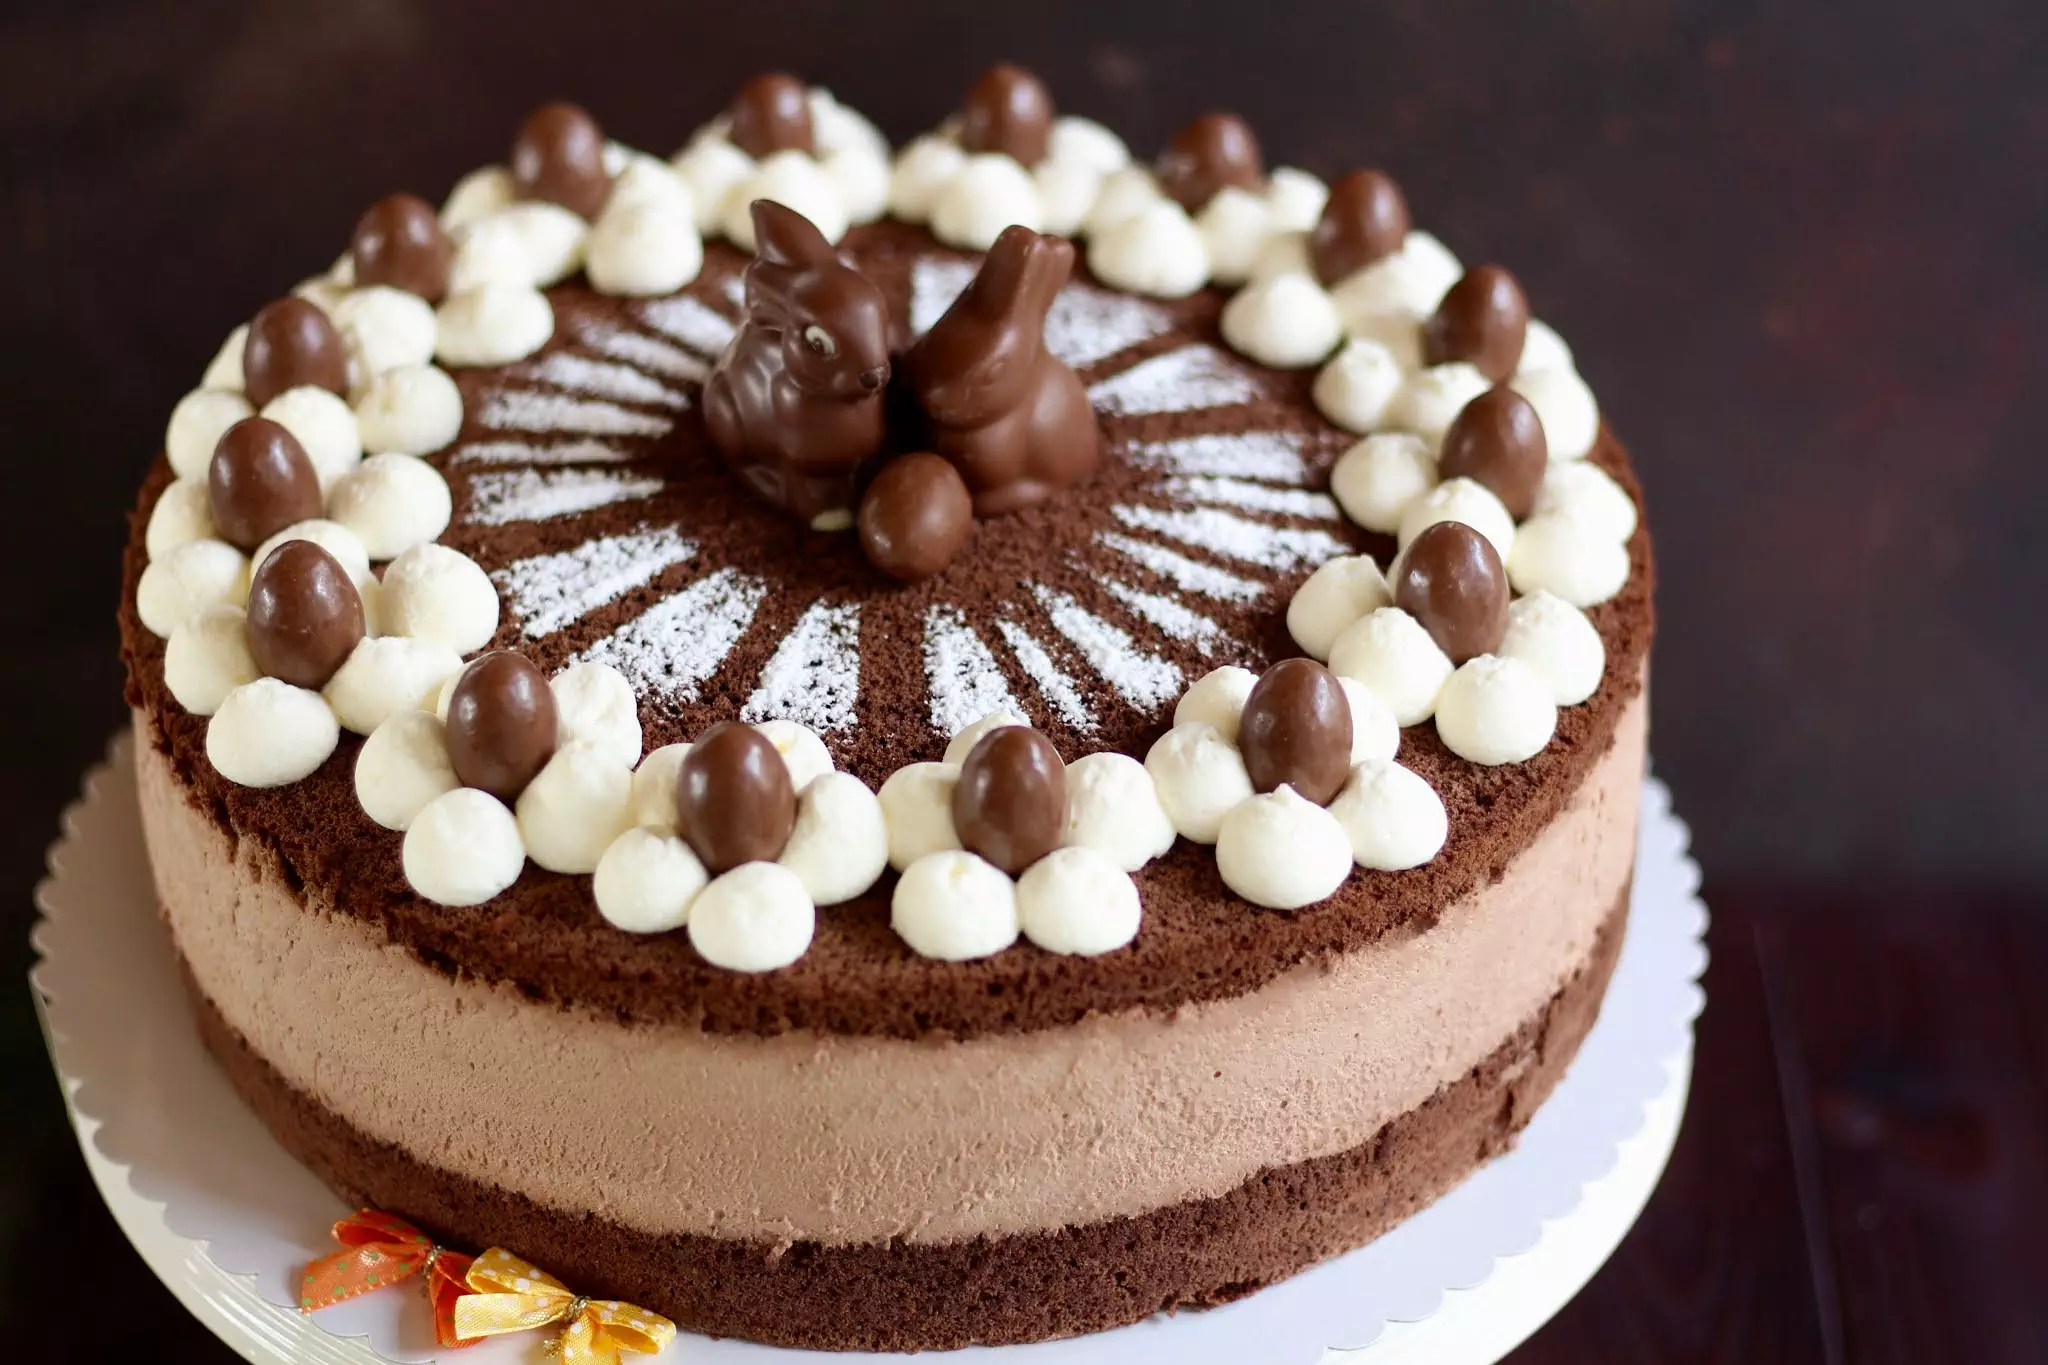 Die beste Schoko-Käse-Sahne-Torte backen! Traumhafte Ostertorte mit viel Schokolade zum 18. Geburtstag! | Rezept und Video von Sugarprinces